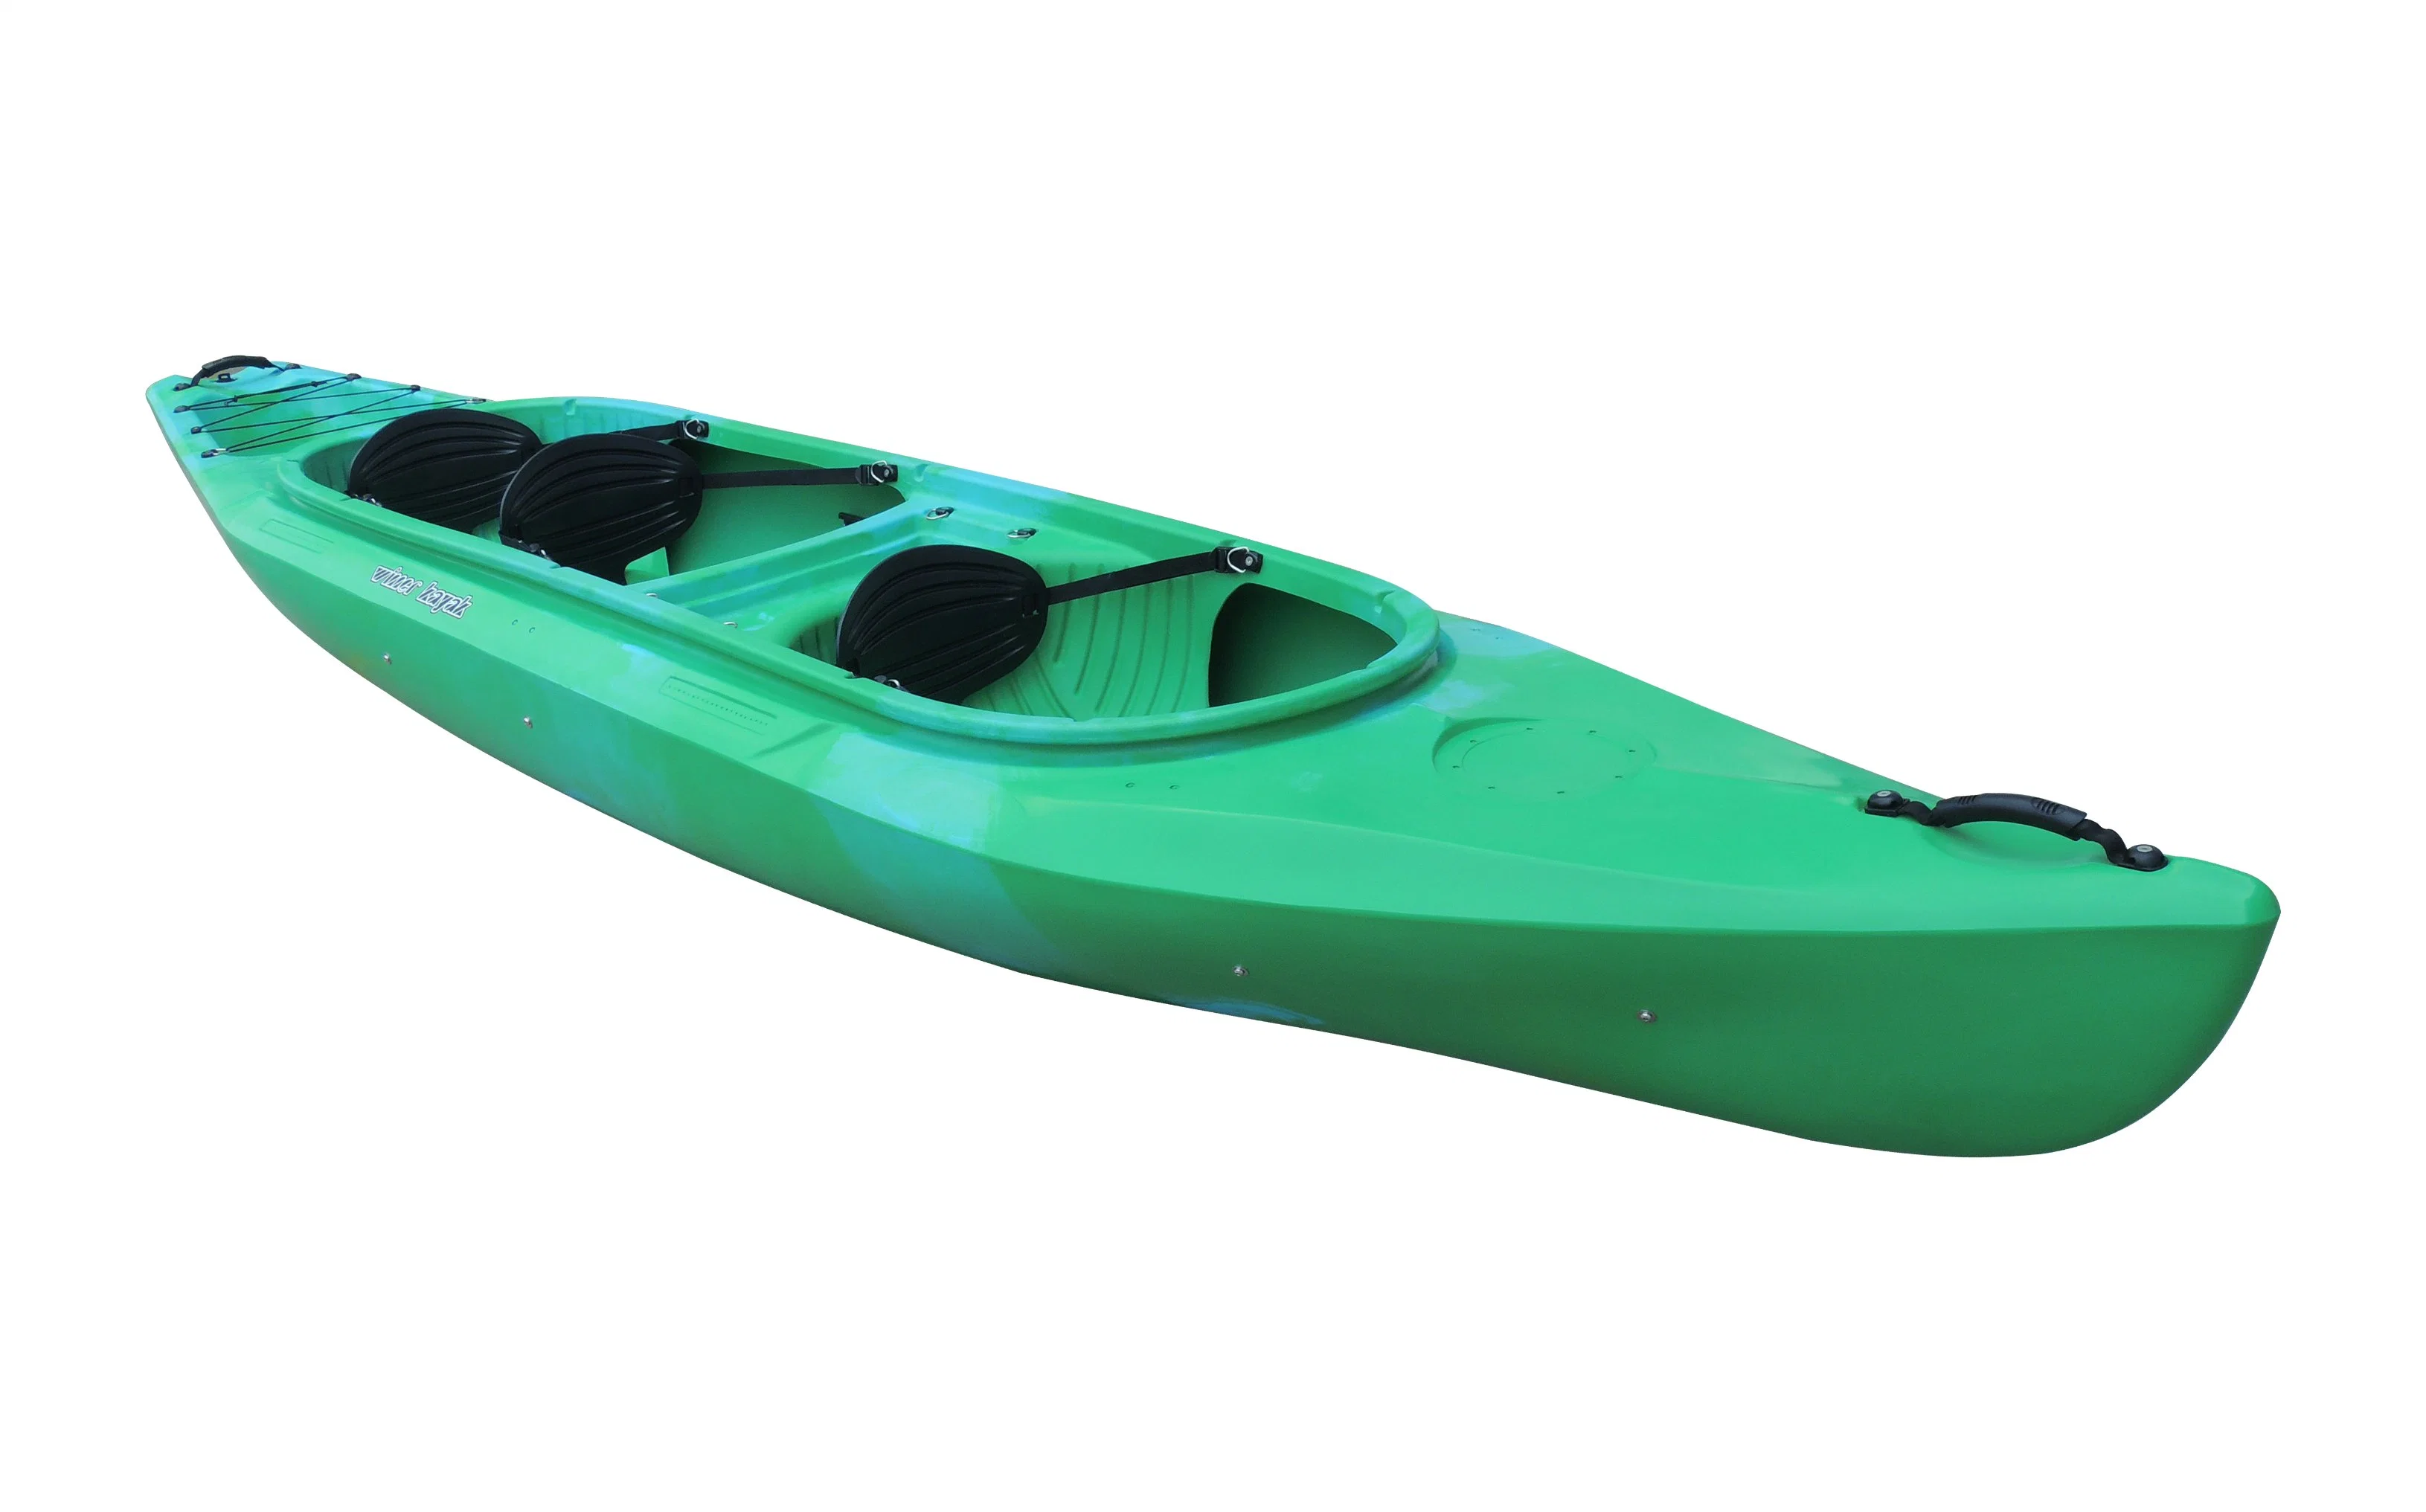 Large Space Family Recreational Fishing Kayak